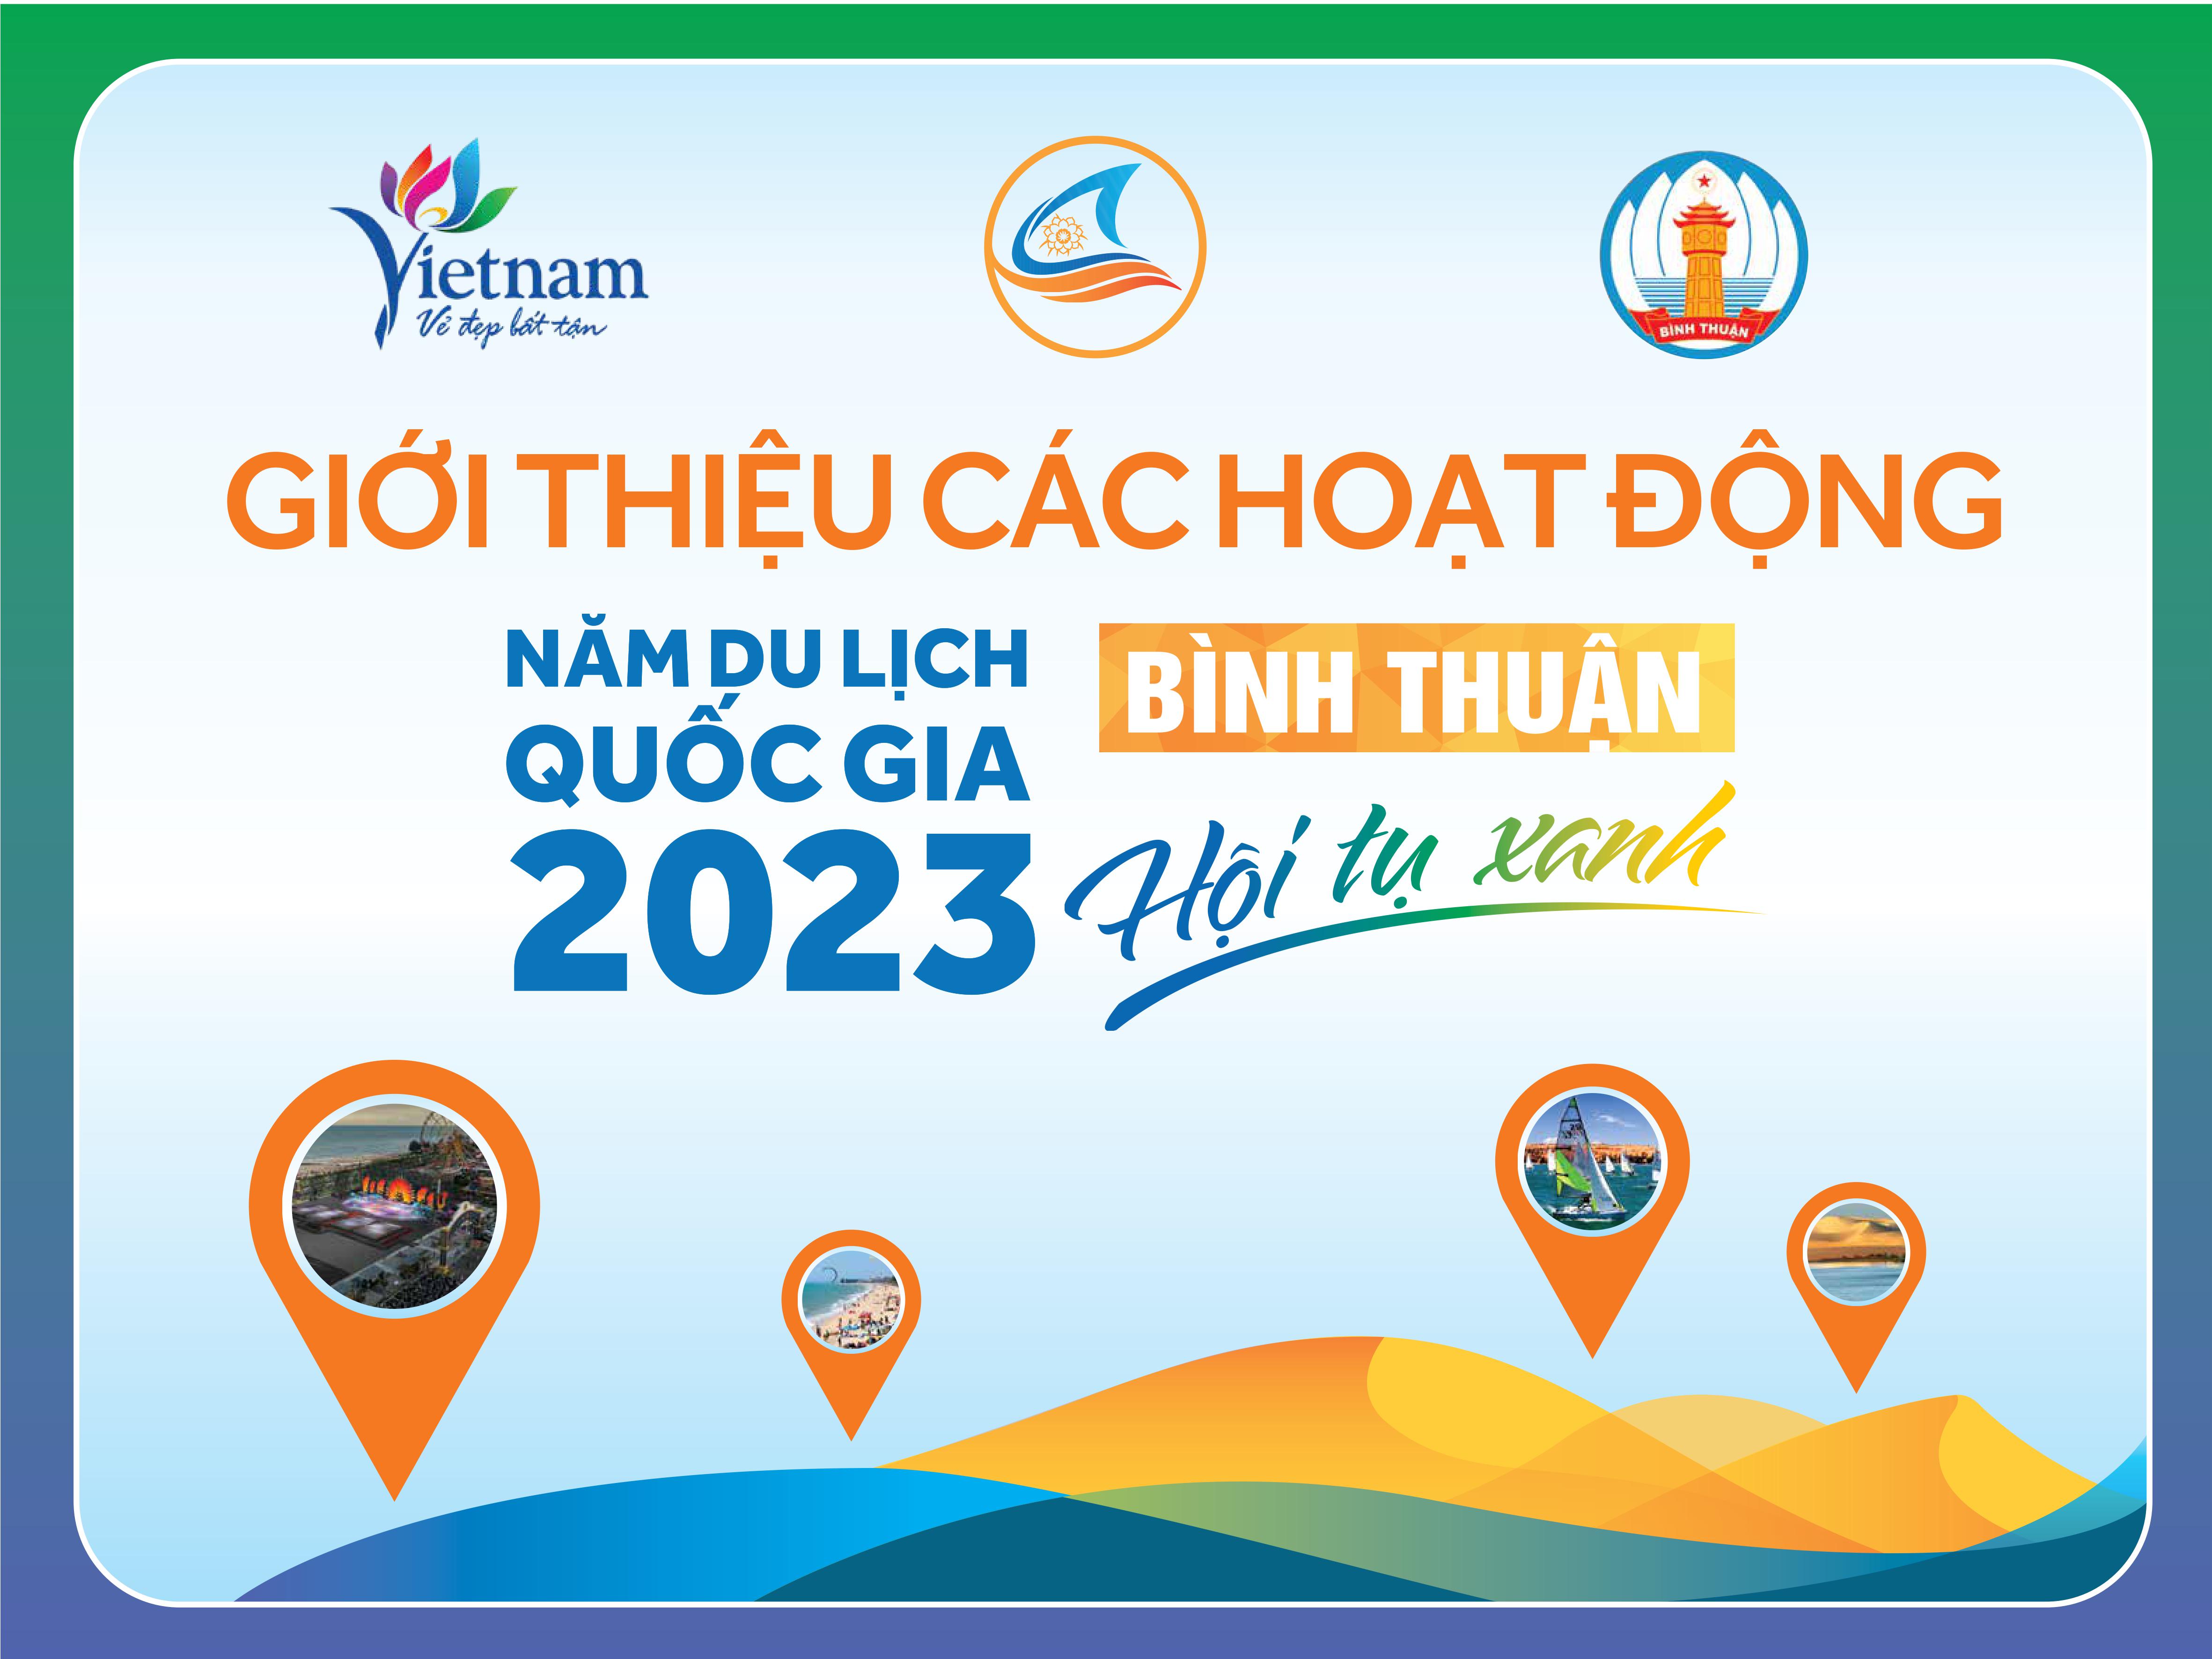 Năm du lịch quốc gia 2023 - Bình Thuận - Hội tụ xanh